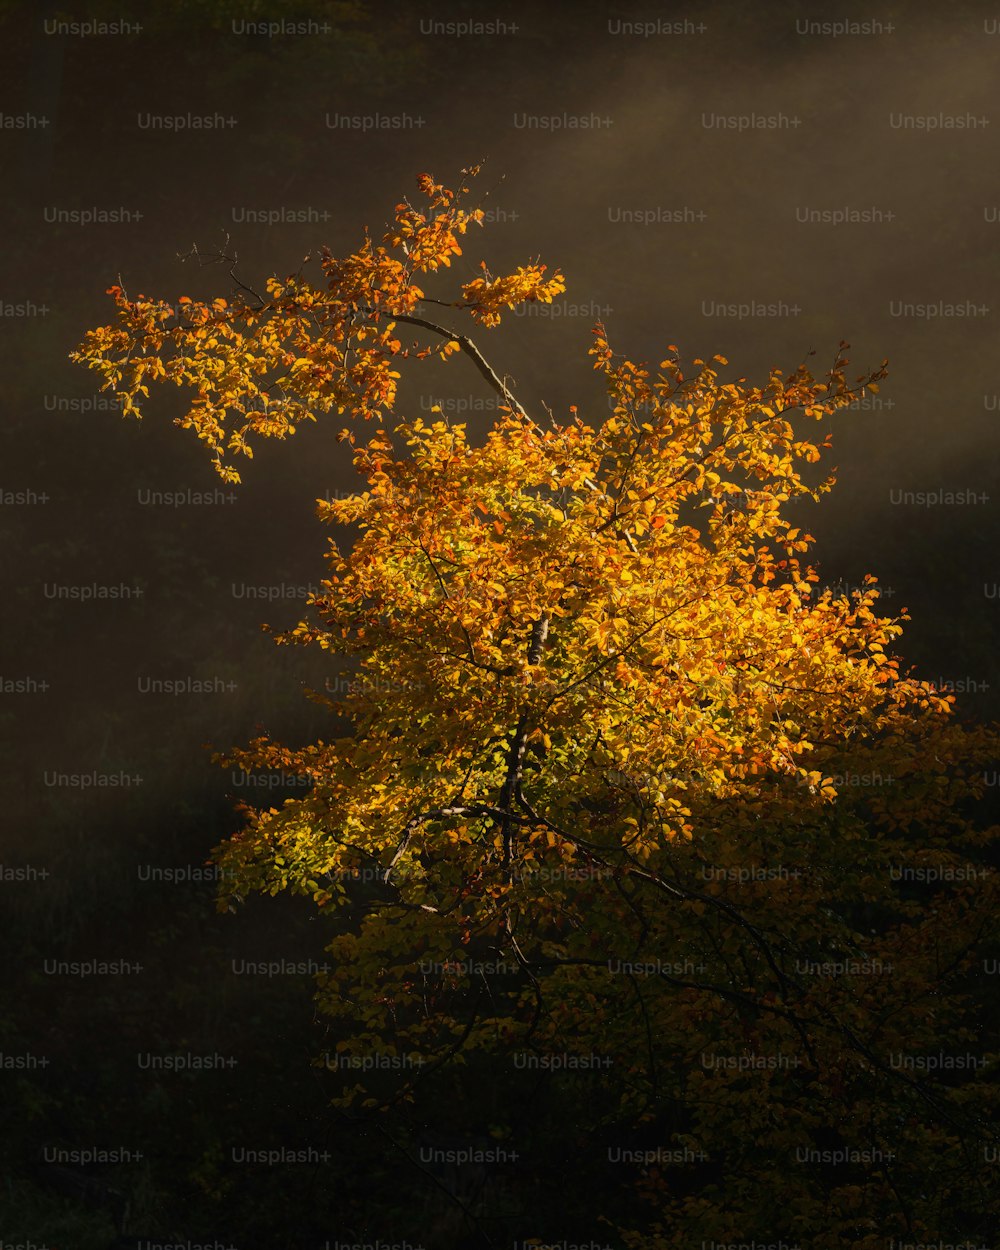 Un arbre aux feuilles jaunes dans l’obscurité